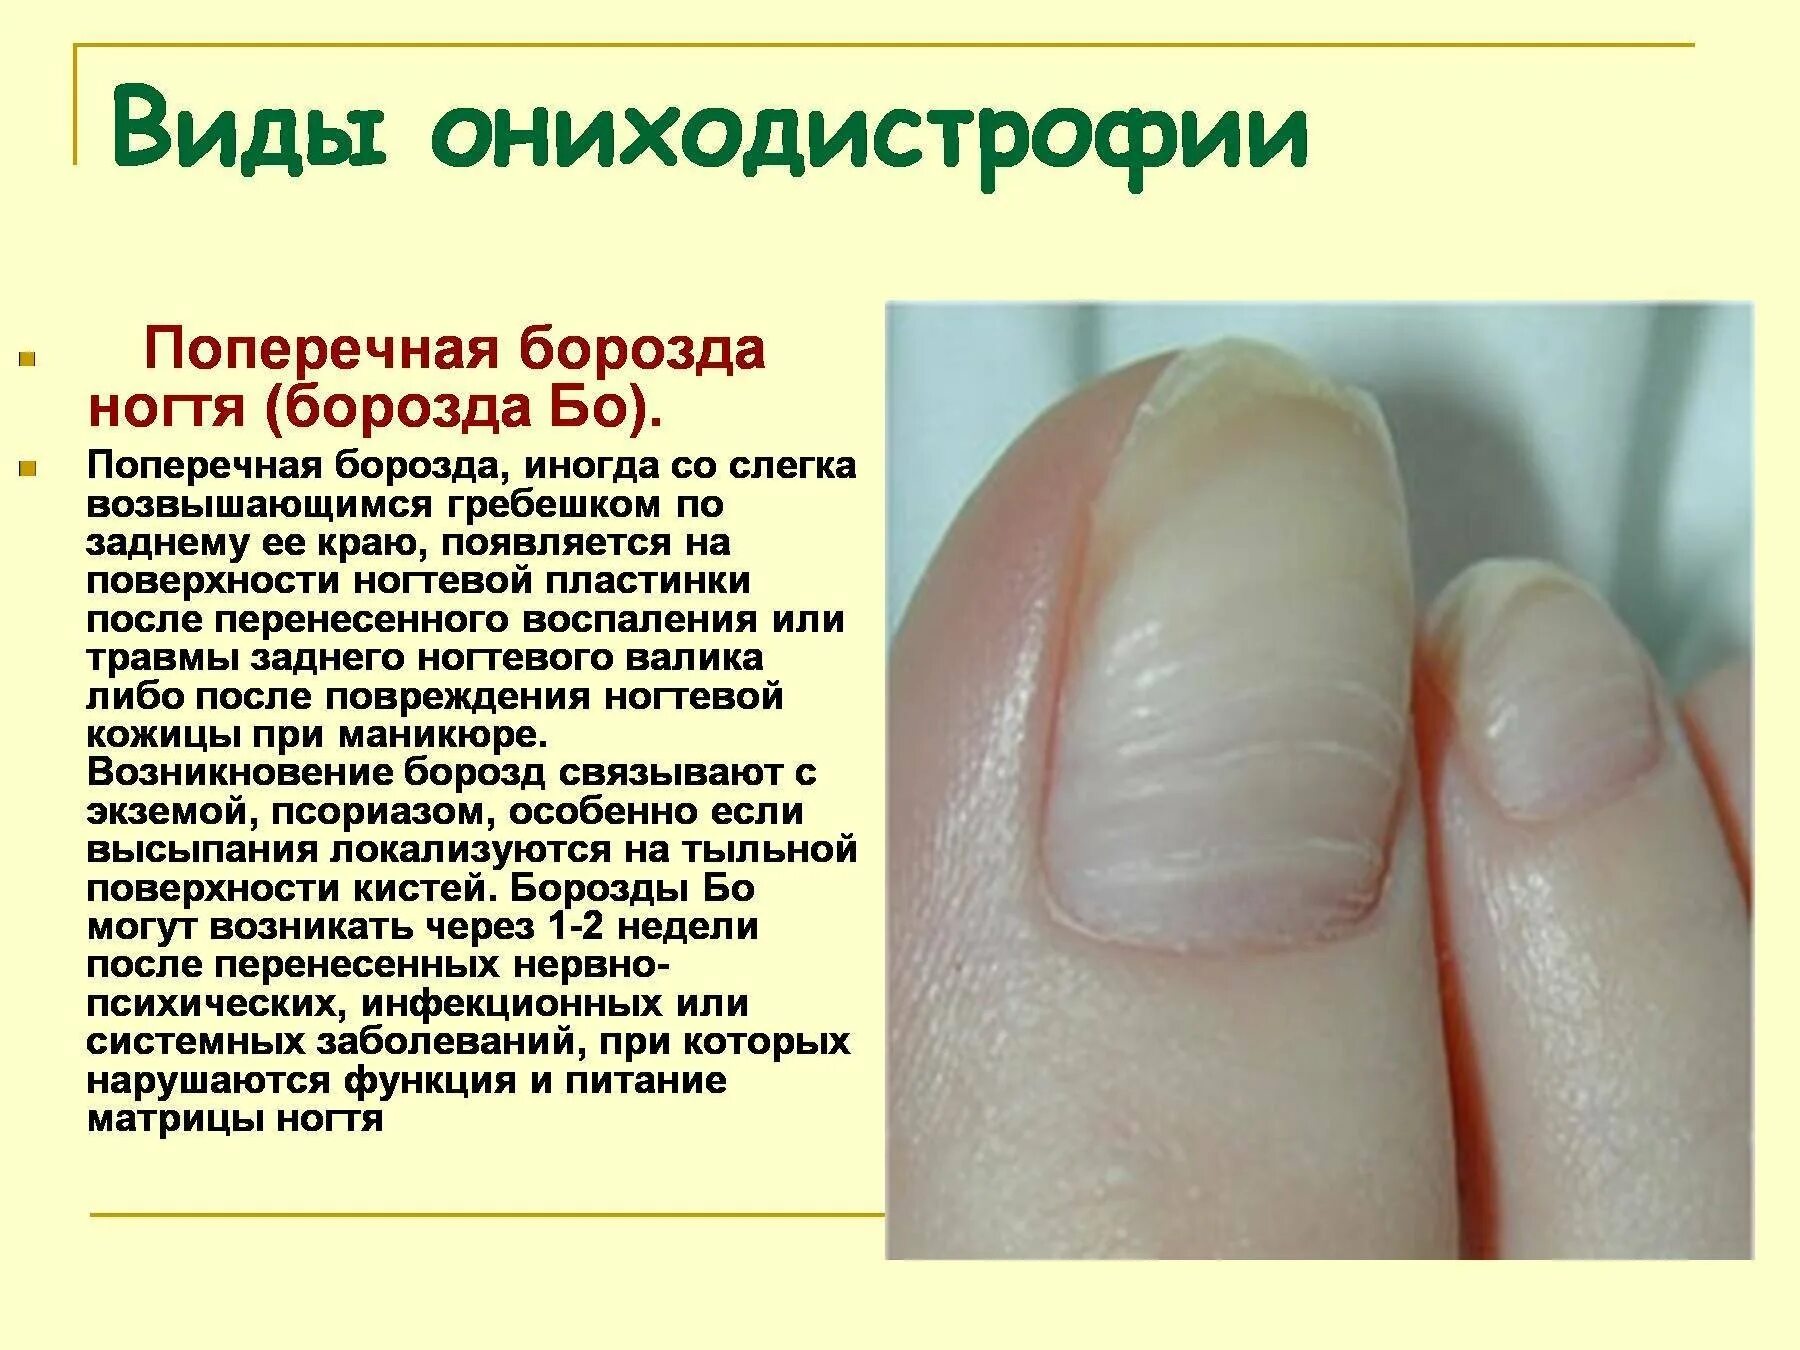 Почему ногти стали мягкими. Попеперечные борозды на ногте. Поперечные борозды на ногтях. Продольные и поперечные борозды на ногтях.